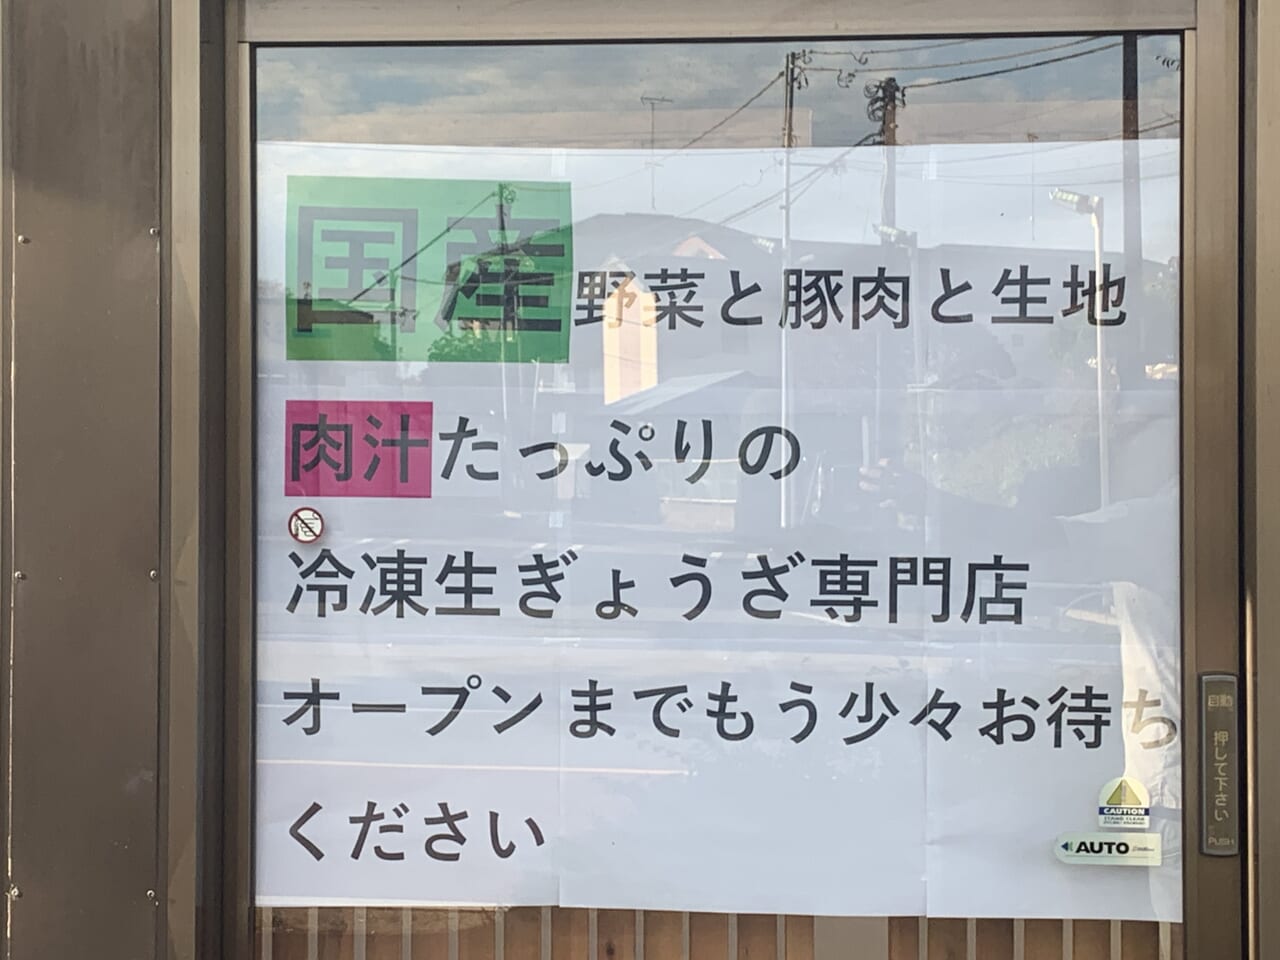 11月10日冷凍生餃子専門店　オープン